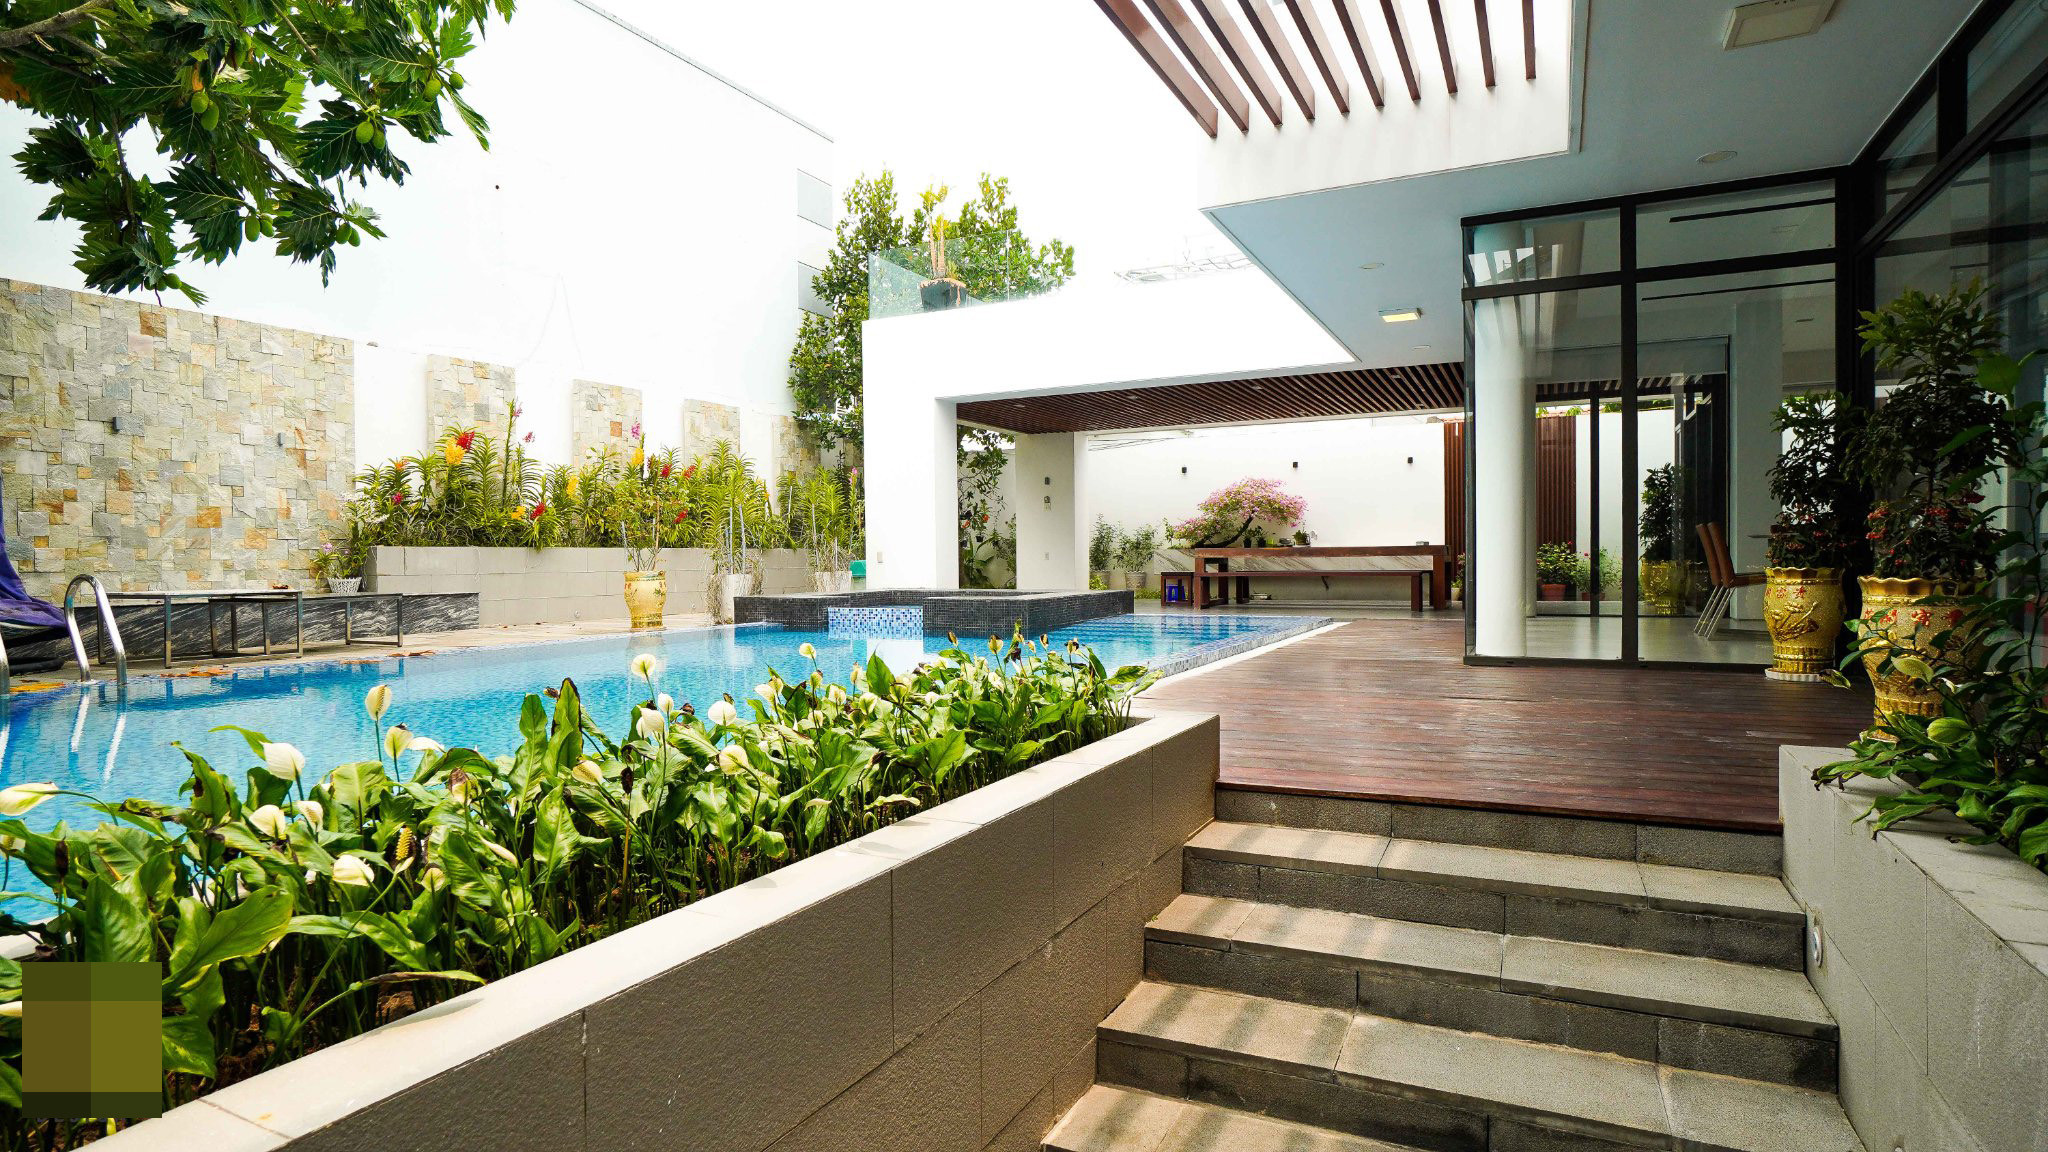 villa 810 - Villa hút hồn với không gian mở, sử dụng hồ bơi và bể sục tiện nghi